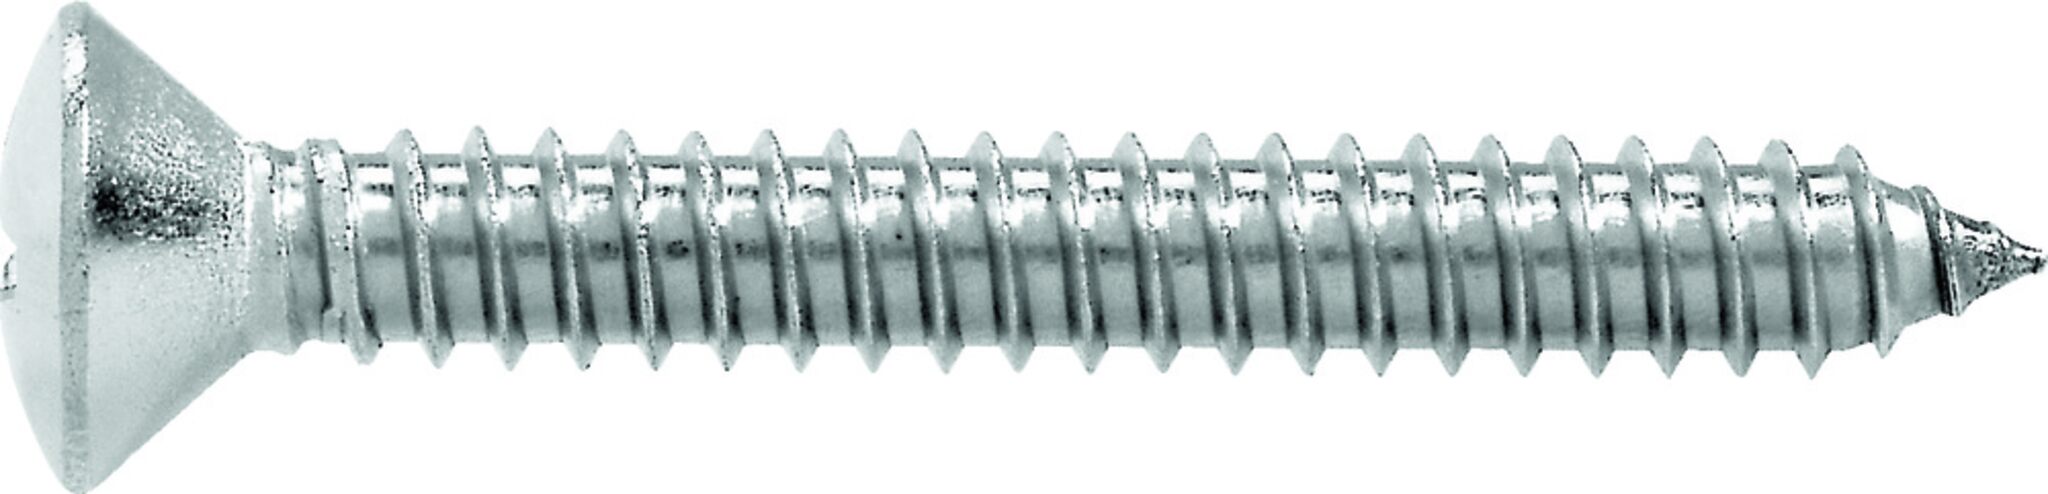 Linsensenkkopf Blechschraube (DIN 7983-A4)